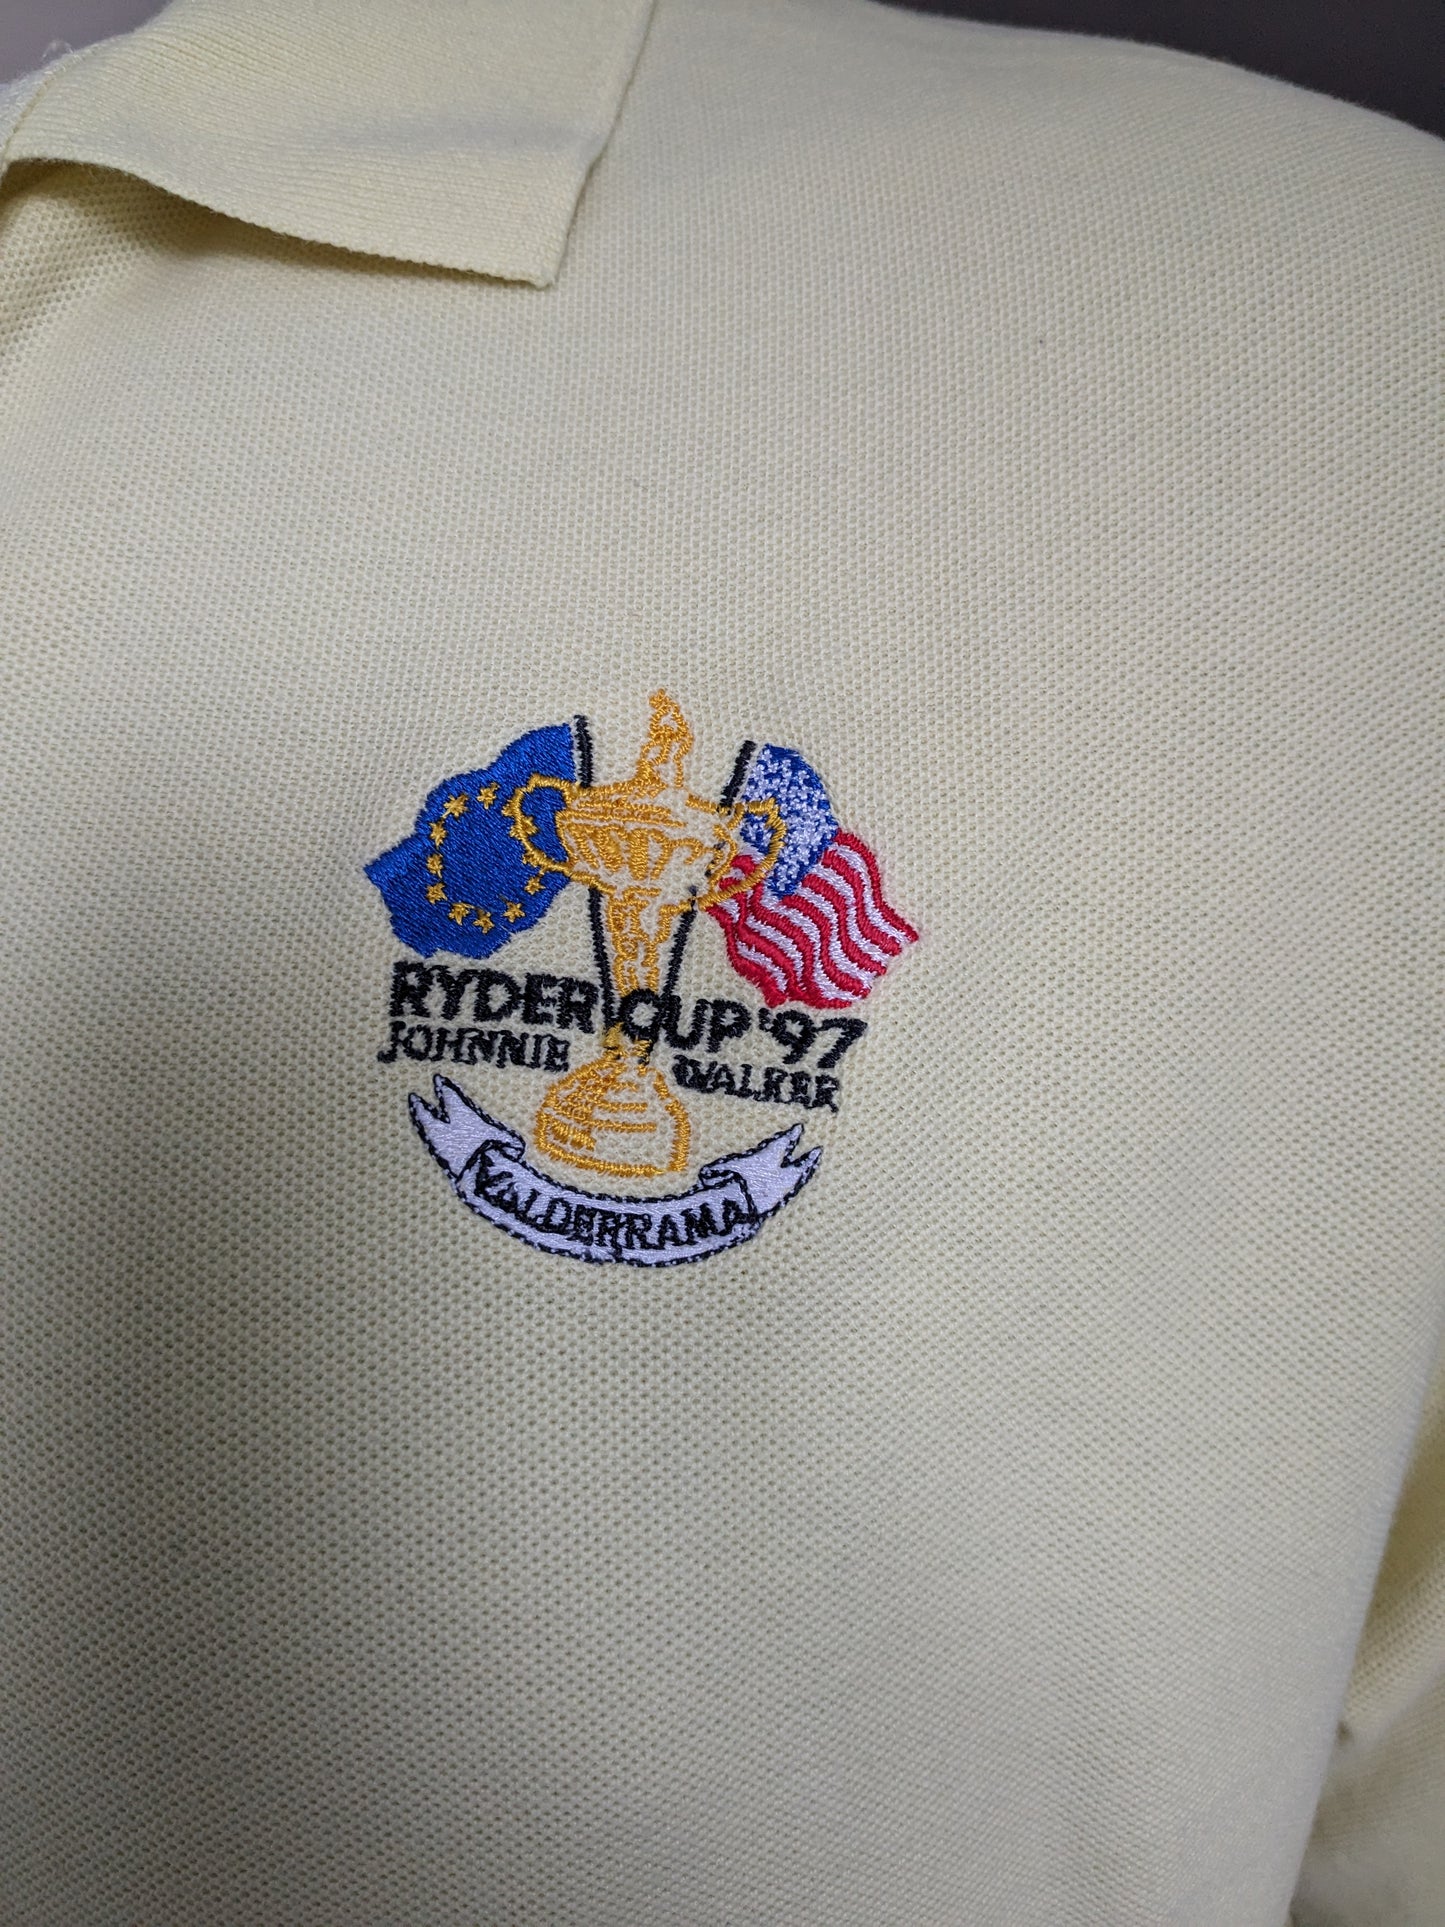 Vintage Glenmuir "Ryder Cup 97" Polo. Color amarillo claro. Talla L.